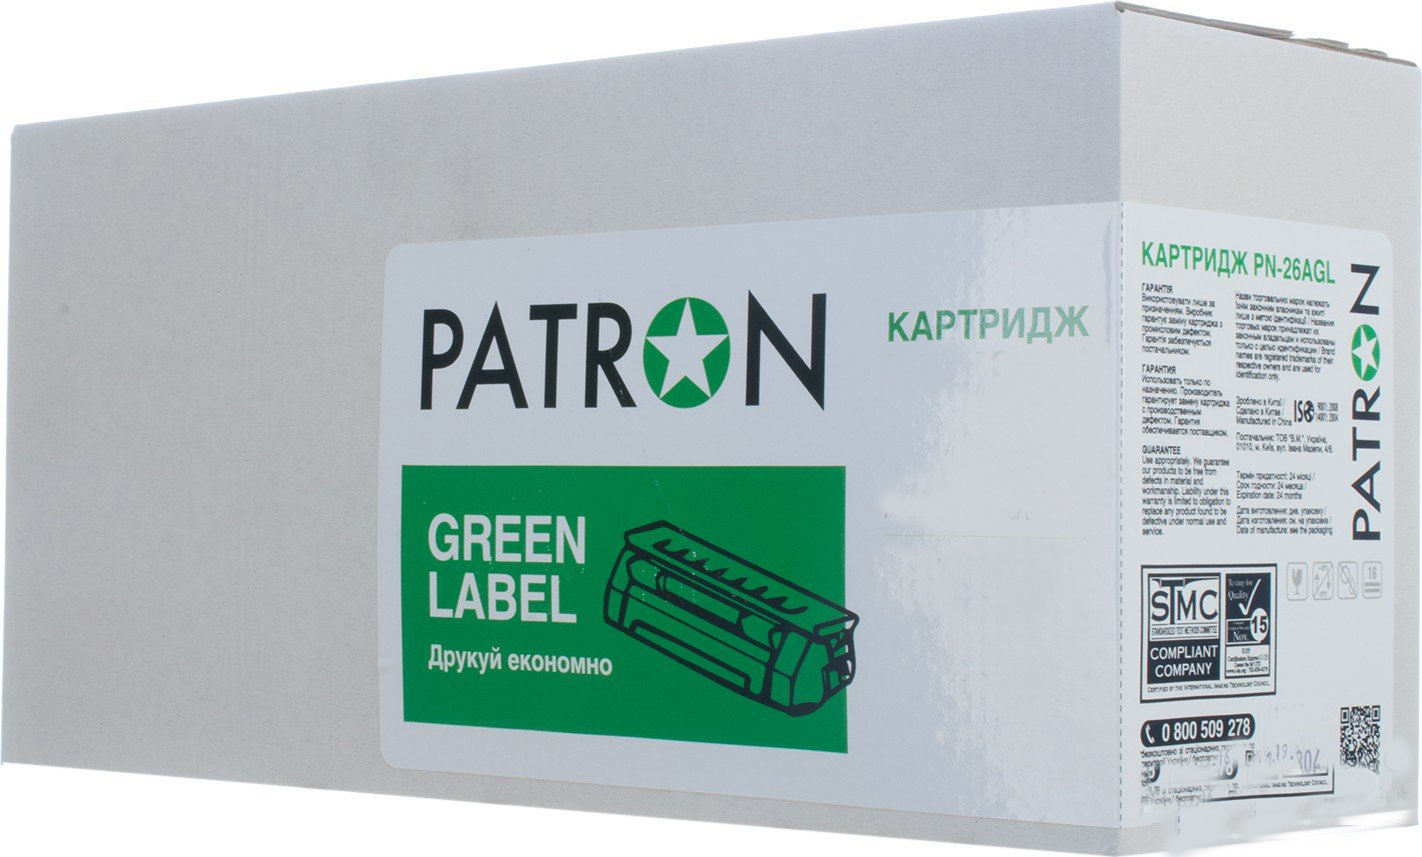 КАРТРИДЖ XEROX 106R01410 (WC 4250/4260)(PR-P-106R01410) 25K. PATRON GREEN